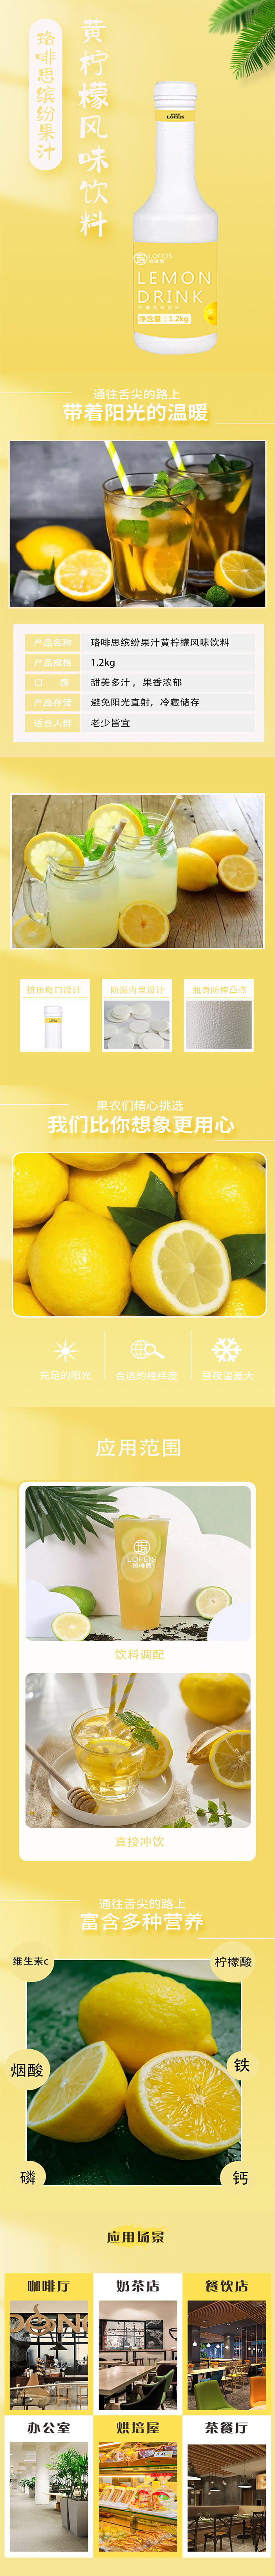 珞啡思缤纷果汁-黄柠檬